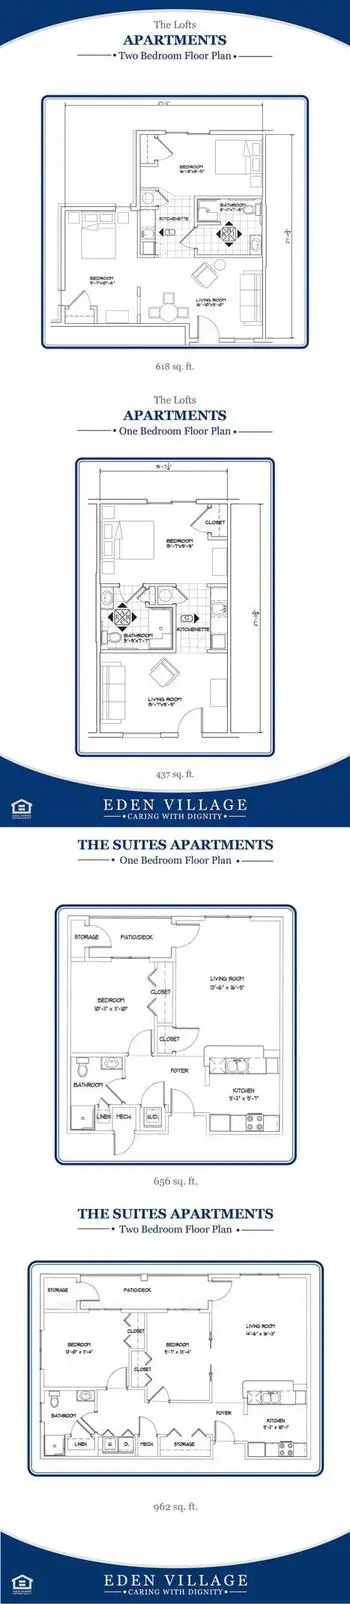 Floorplan of Eden Village, Assisted Living, Nursing Home, Independent Living, CCRC, Glen Carbon, IL 2